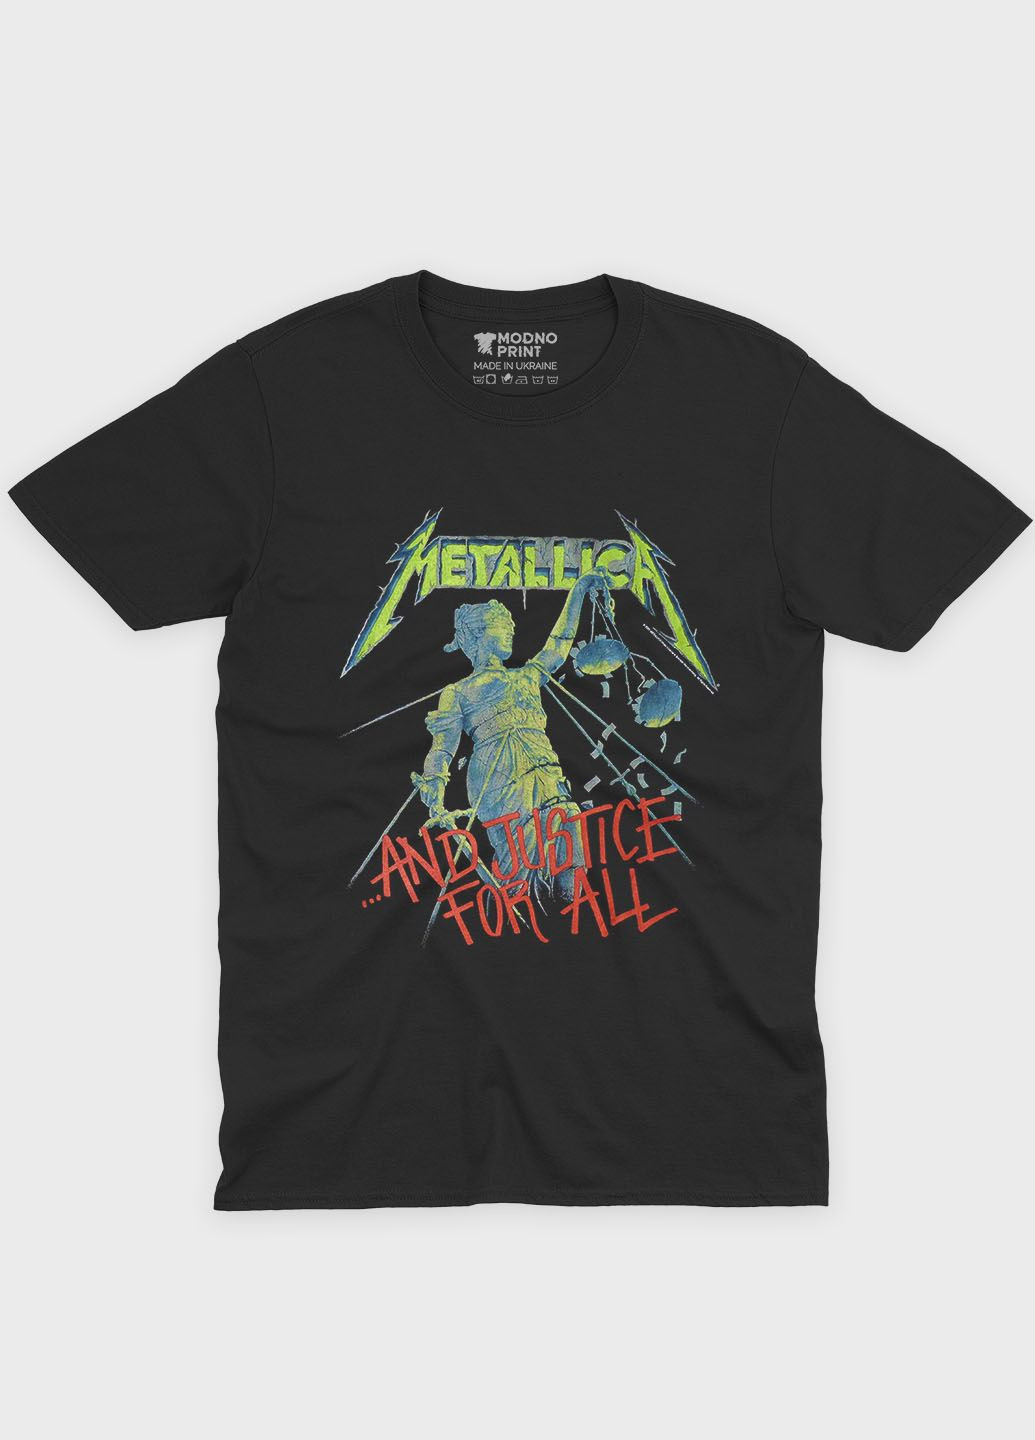 Черная мужская футболка с рок-принтом "metallica" (ts001-3-bl-004-2-205) Modno